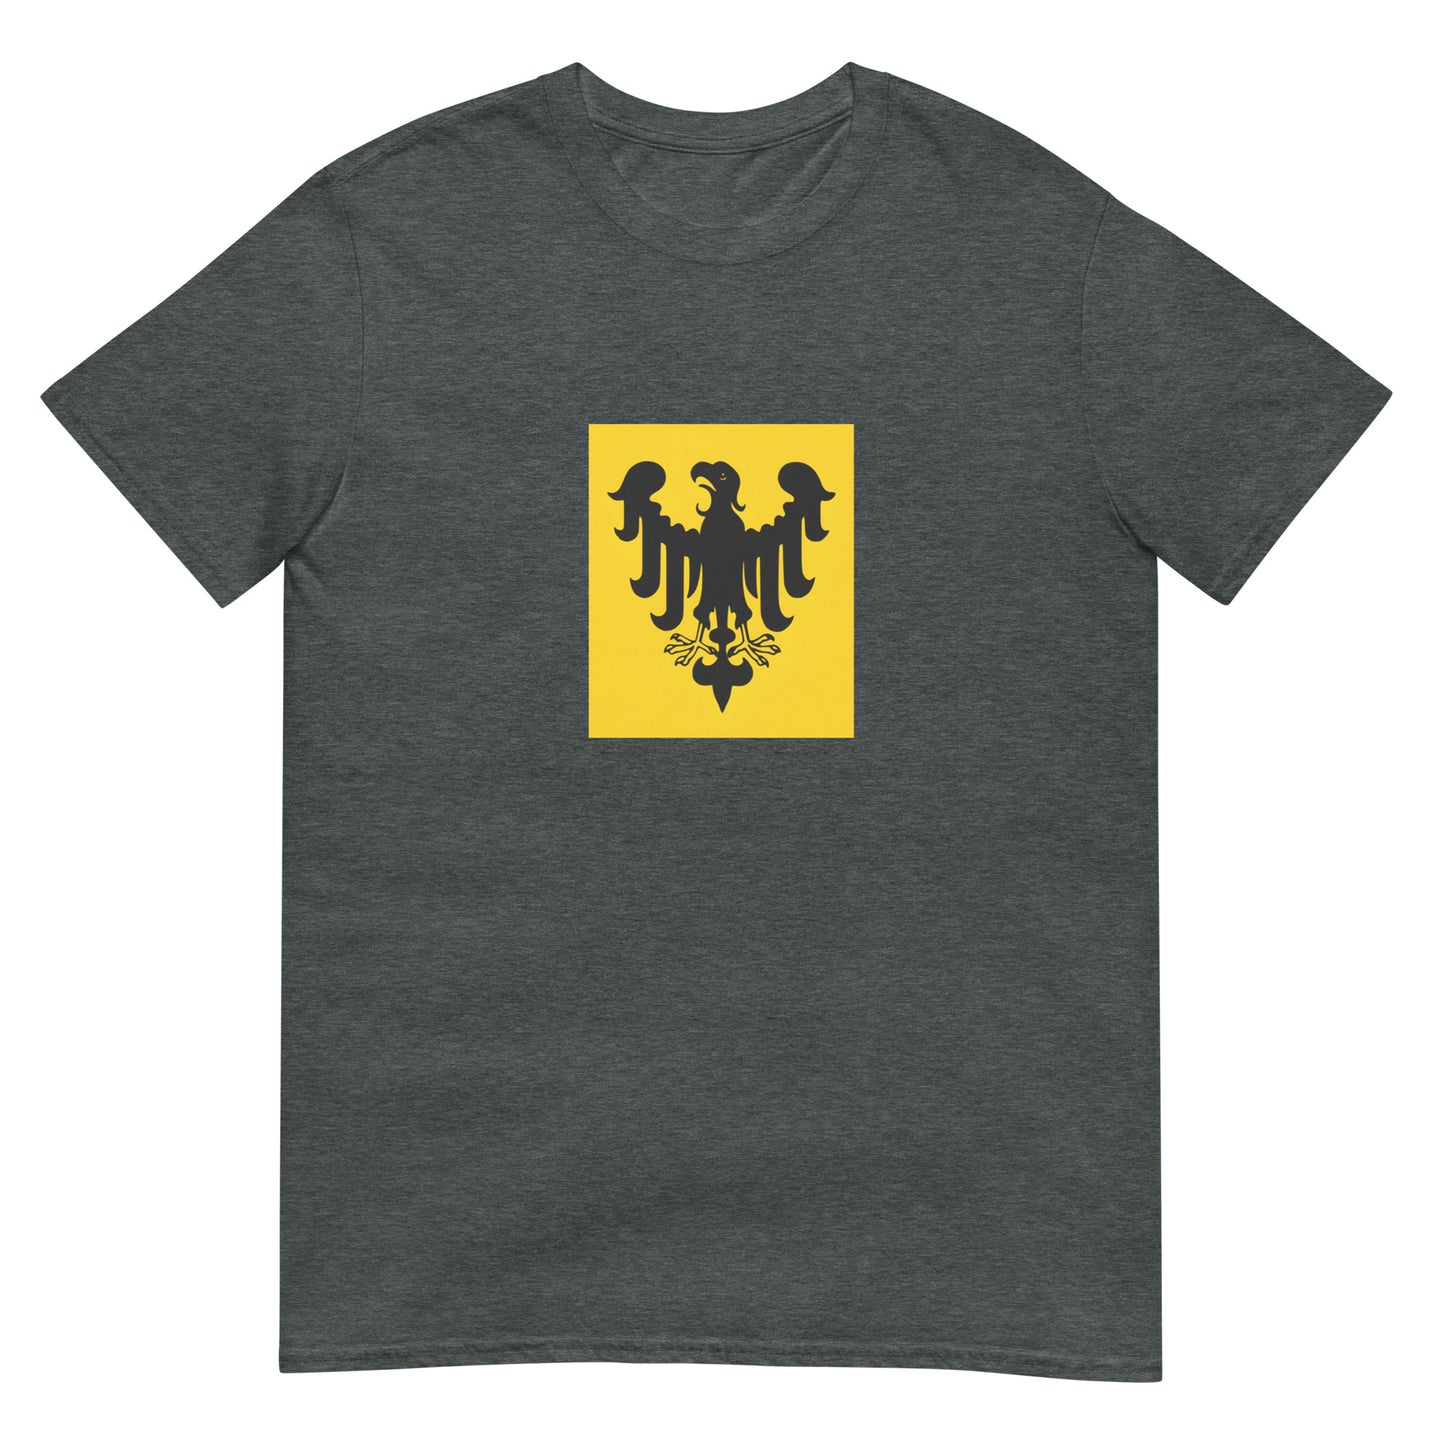 Switzerland - Holy Roman Empire (800-1300) | Historical Flag Short-Sleeve Unisex T-Shirt